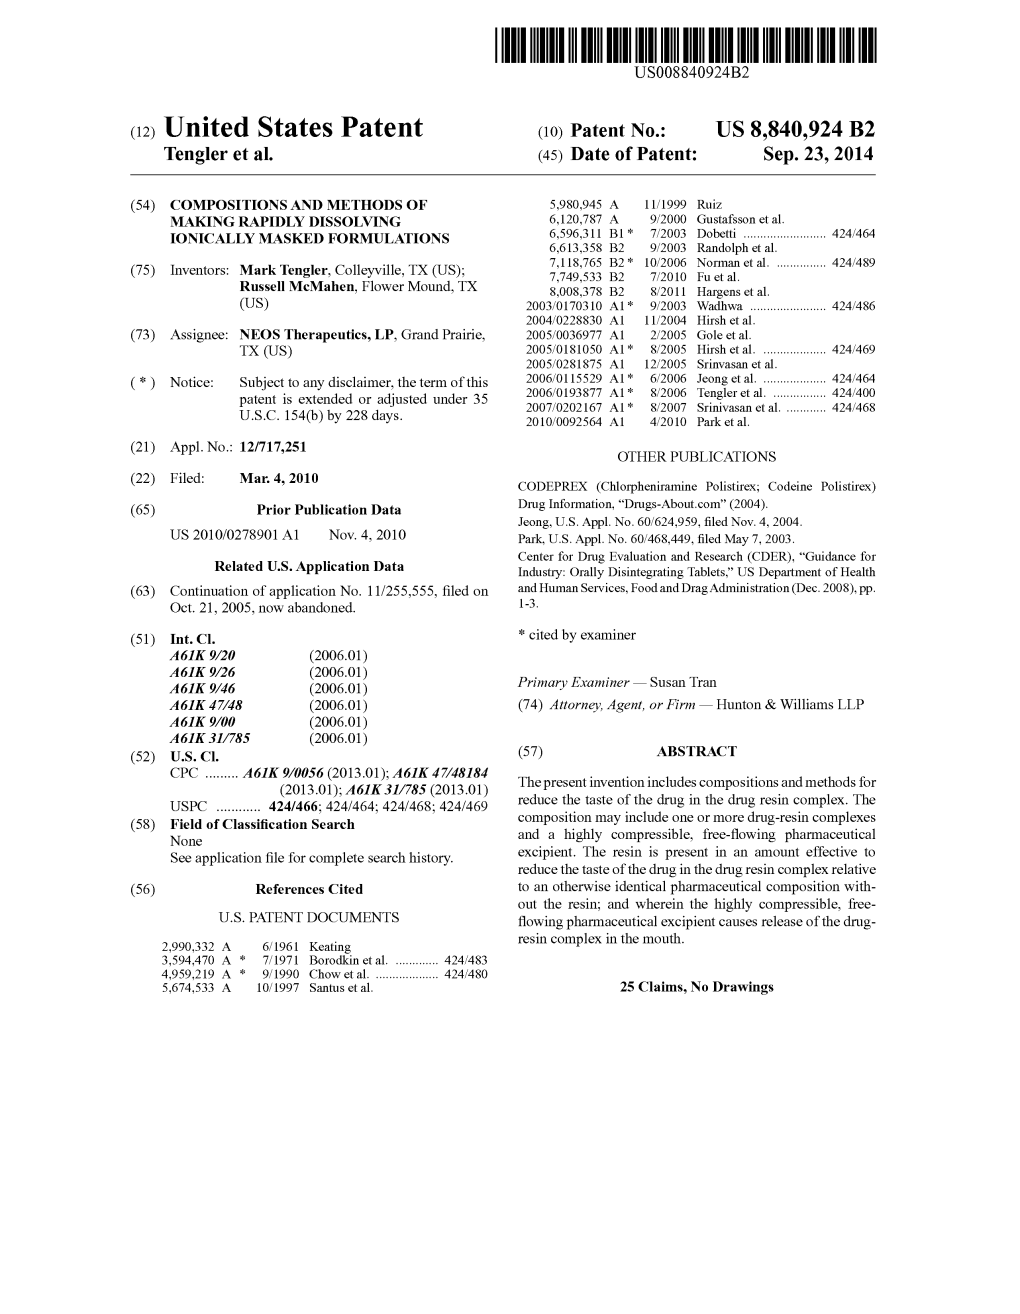 (12) United States Patent (10) Patent No.: US 8,840,924 B2 Tengler Et Al